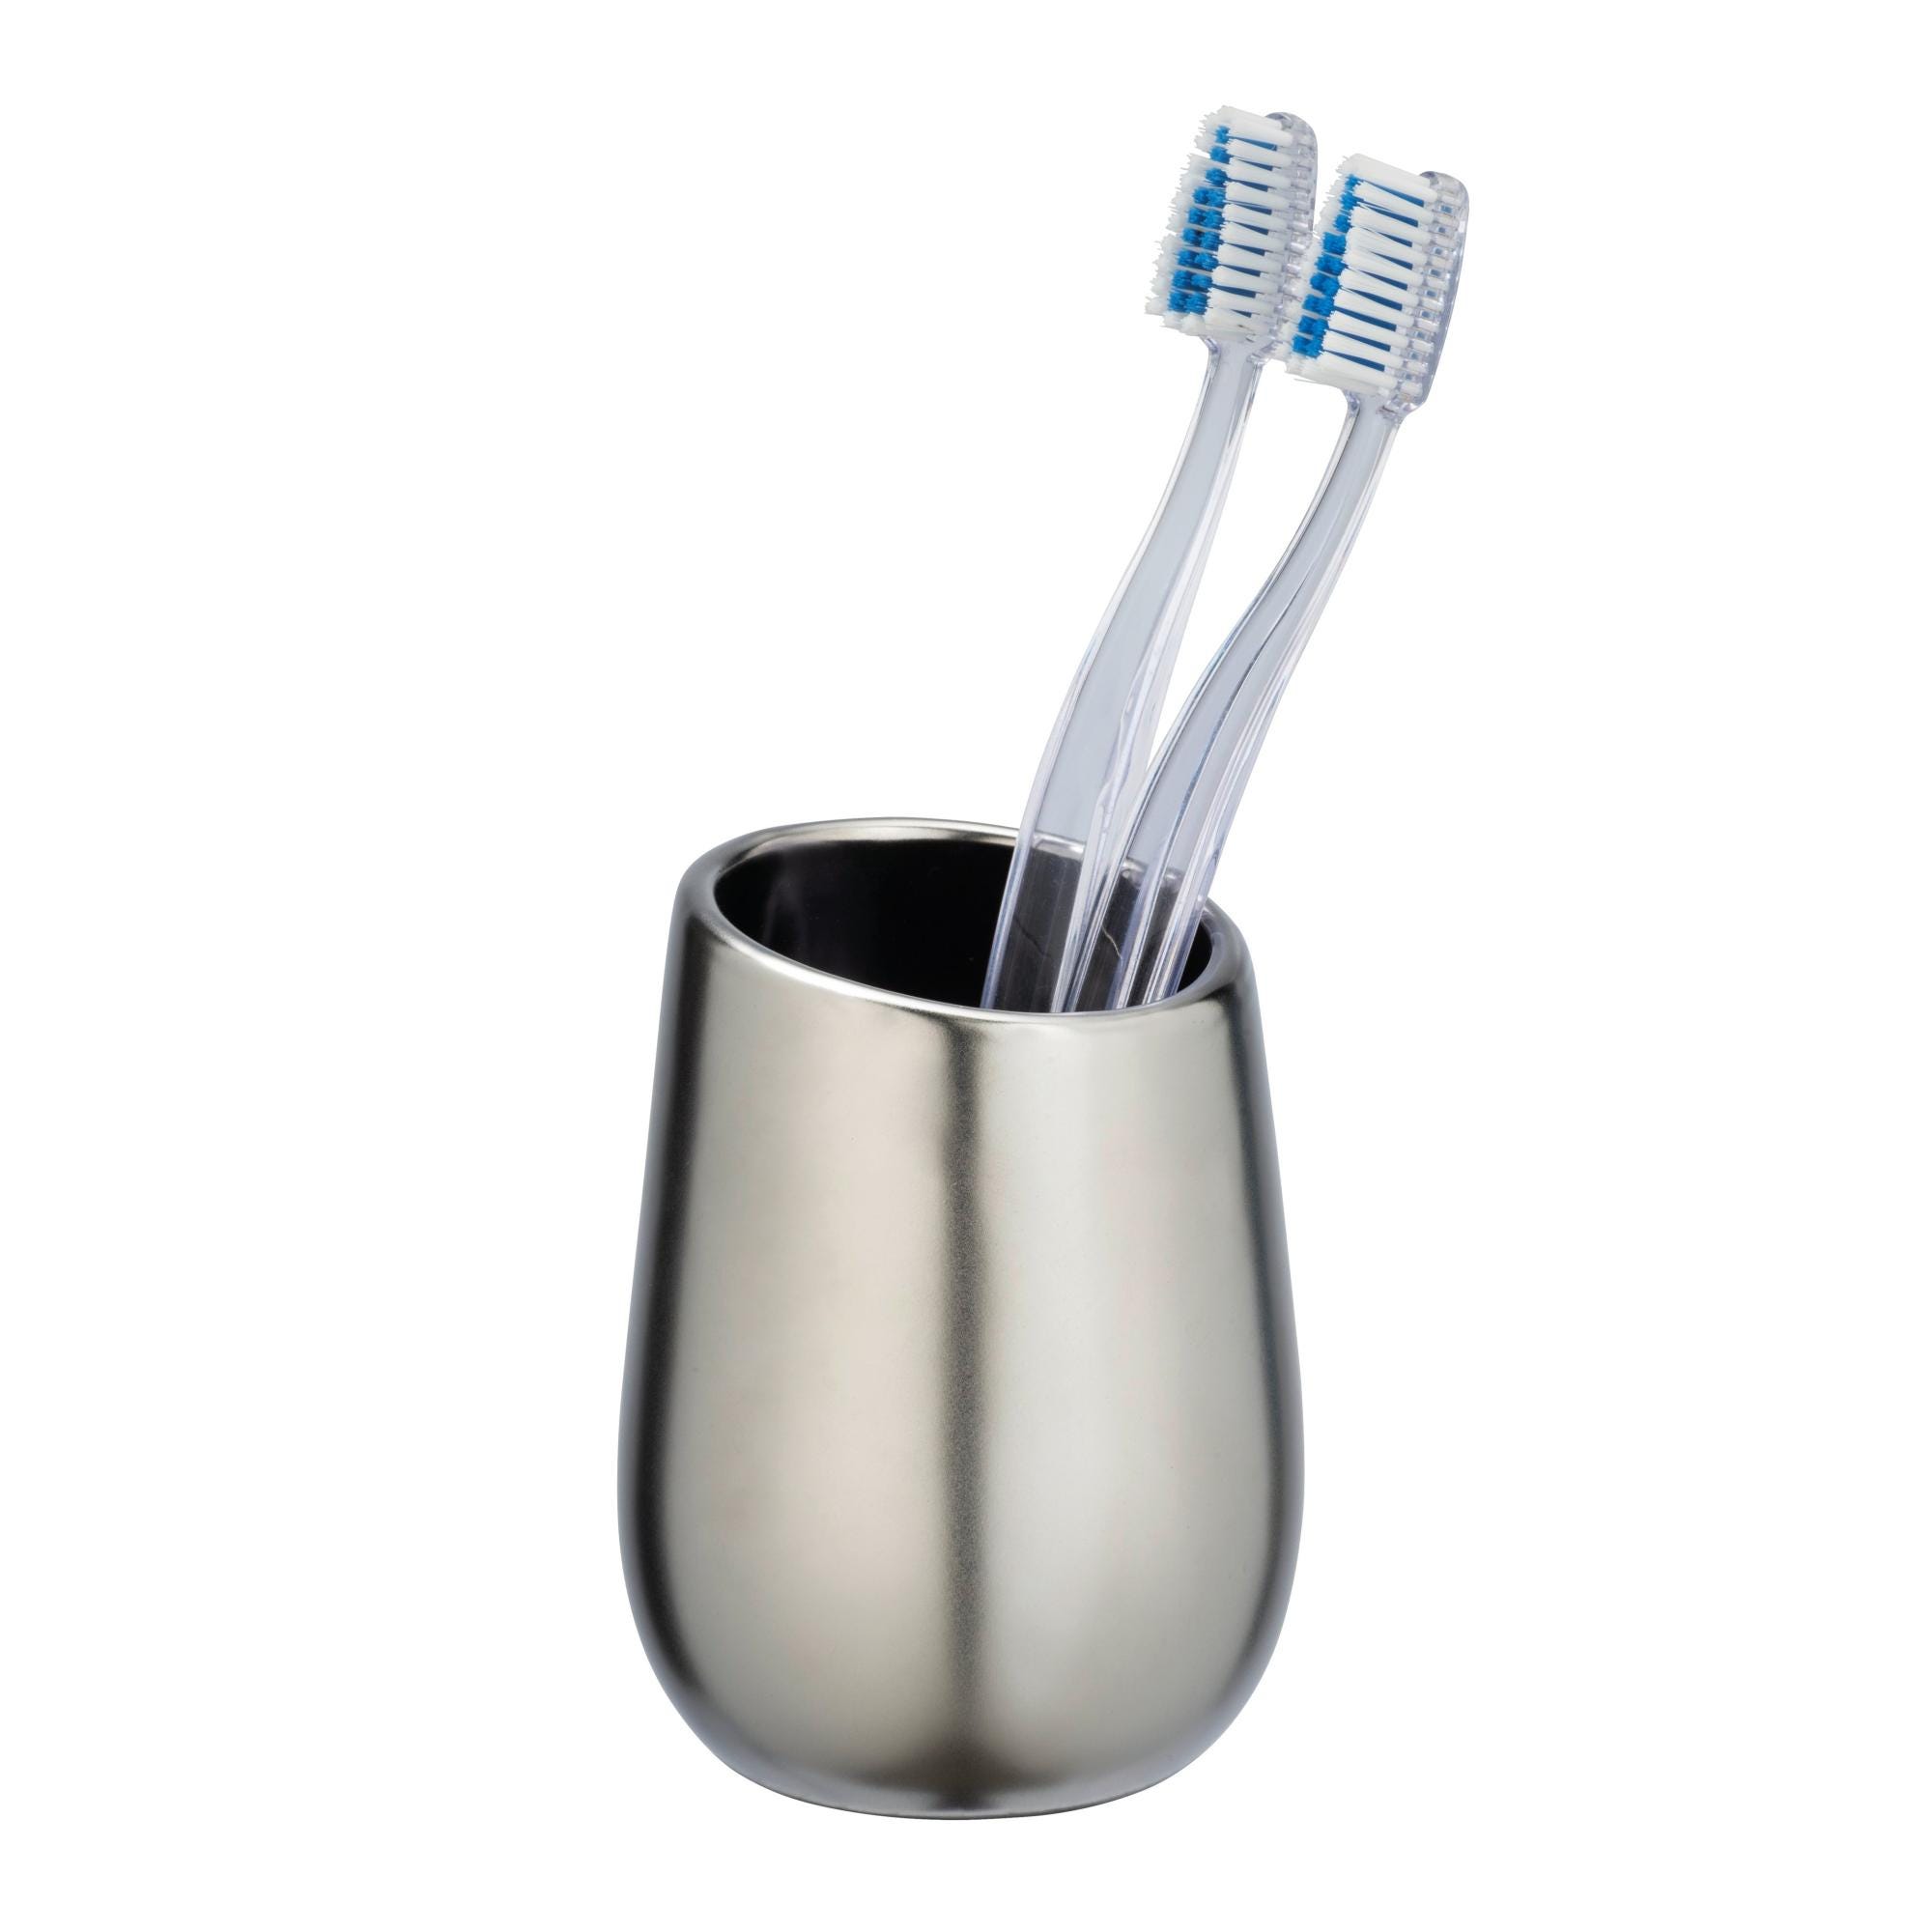 BATHMAN Bicchiere porta spazzolini in ceramica, di colore nero.